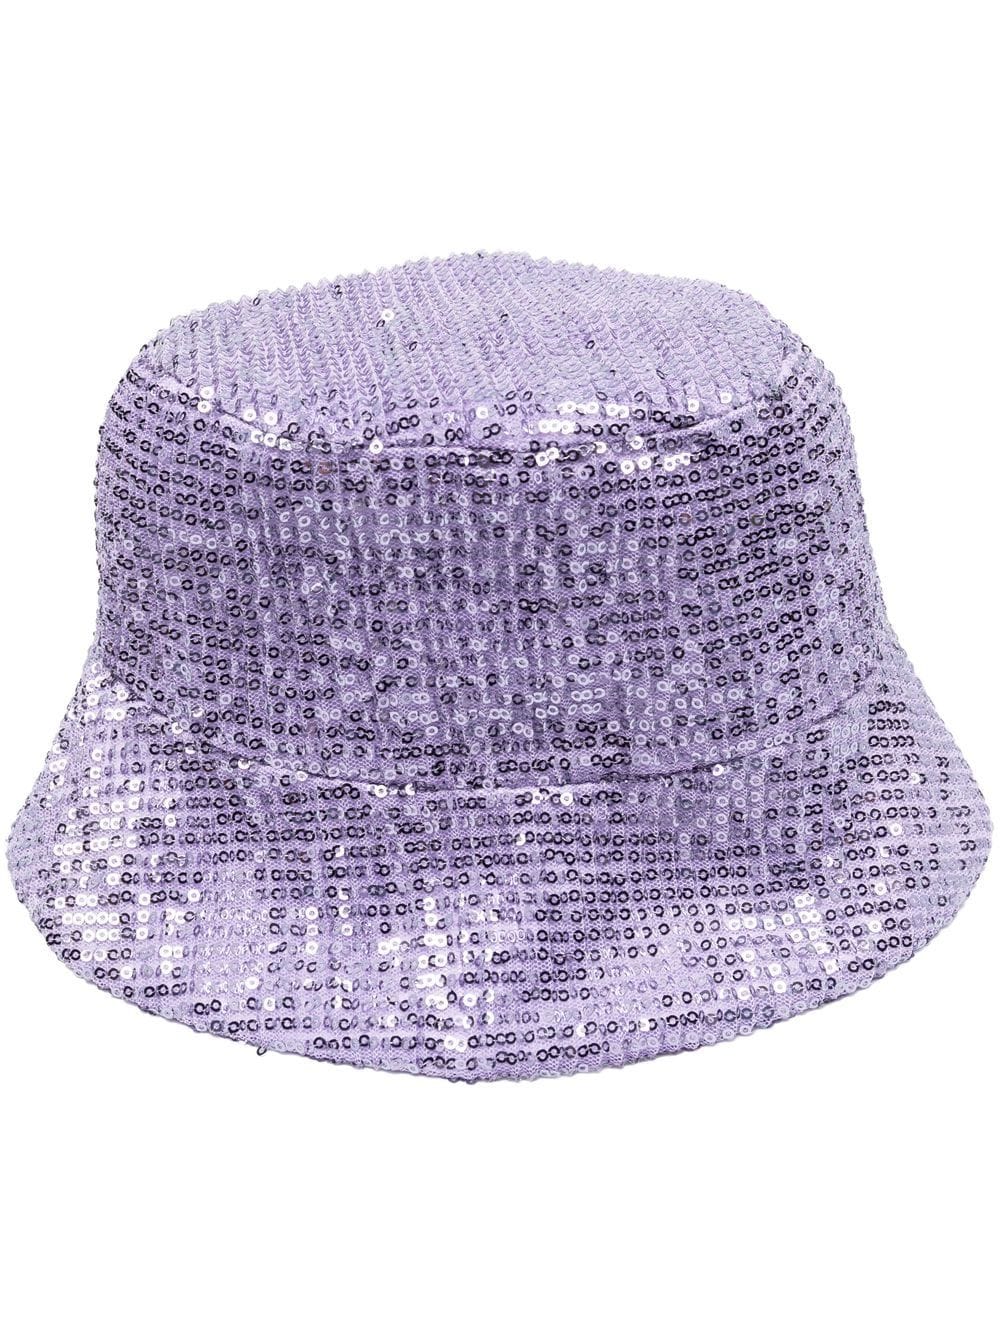 Dorothee Schumacher sequin embellished bucket hat - Purple von Dorothee Schumacher